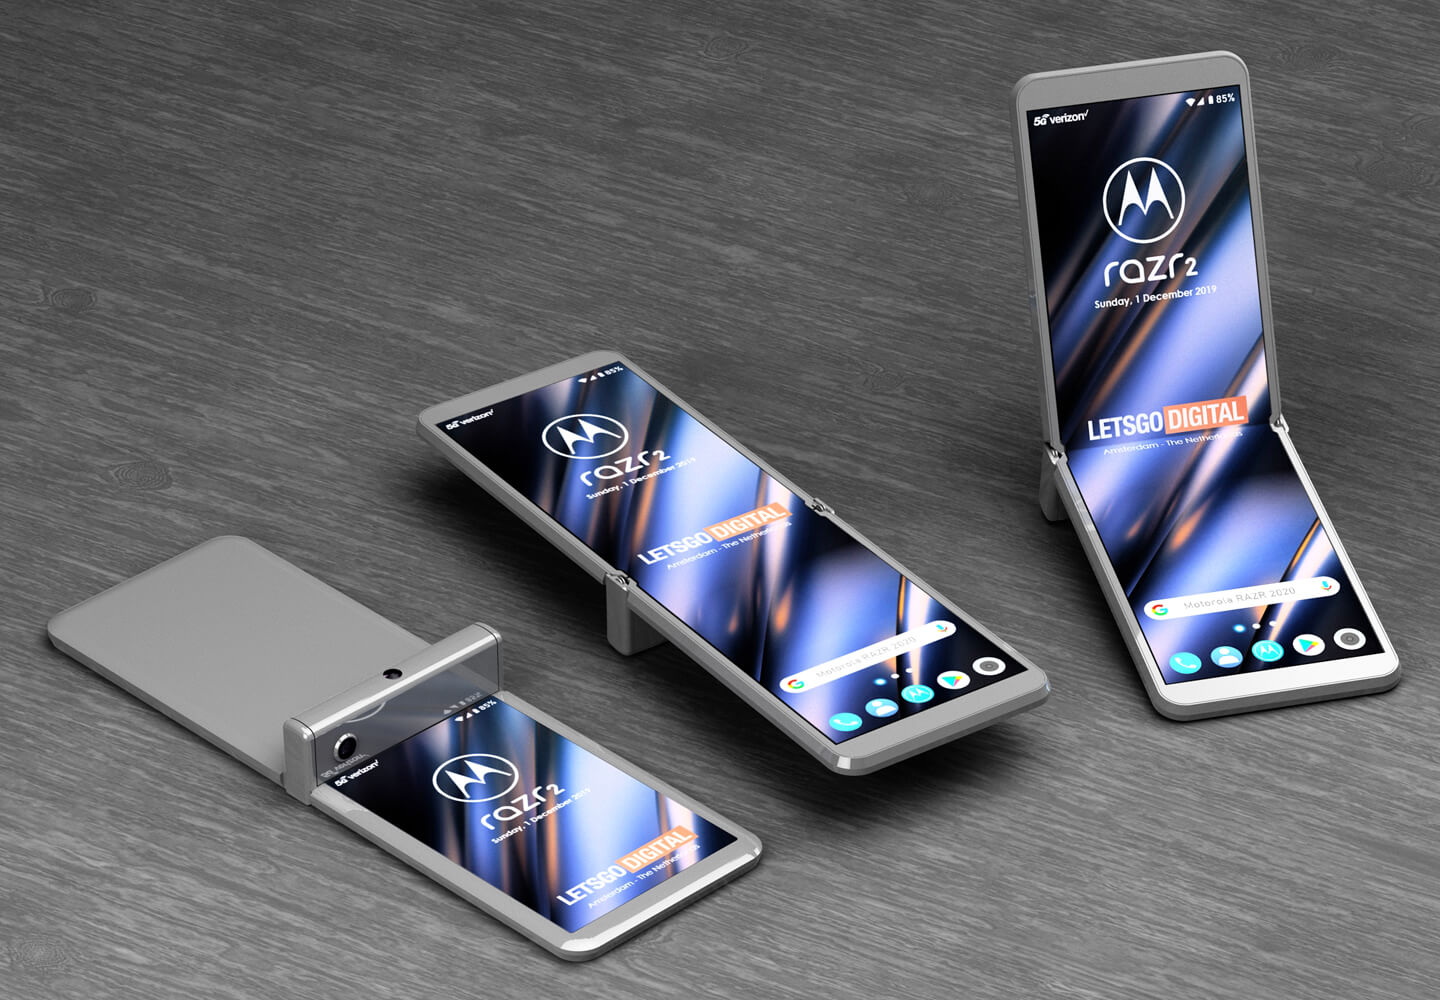 modularny smartfon Motorola Razr 2020 kiedy premiera plotki przecieki wycieki